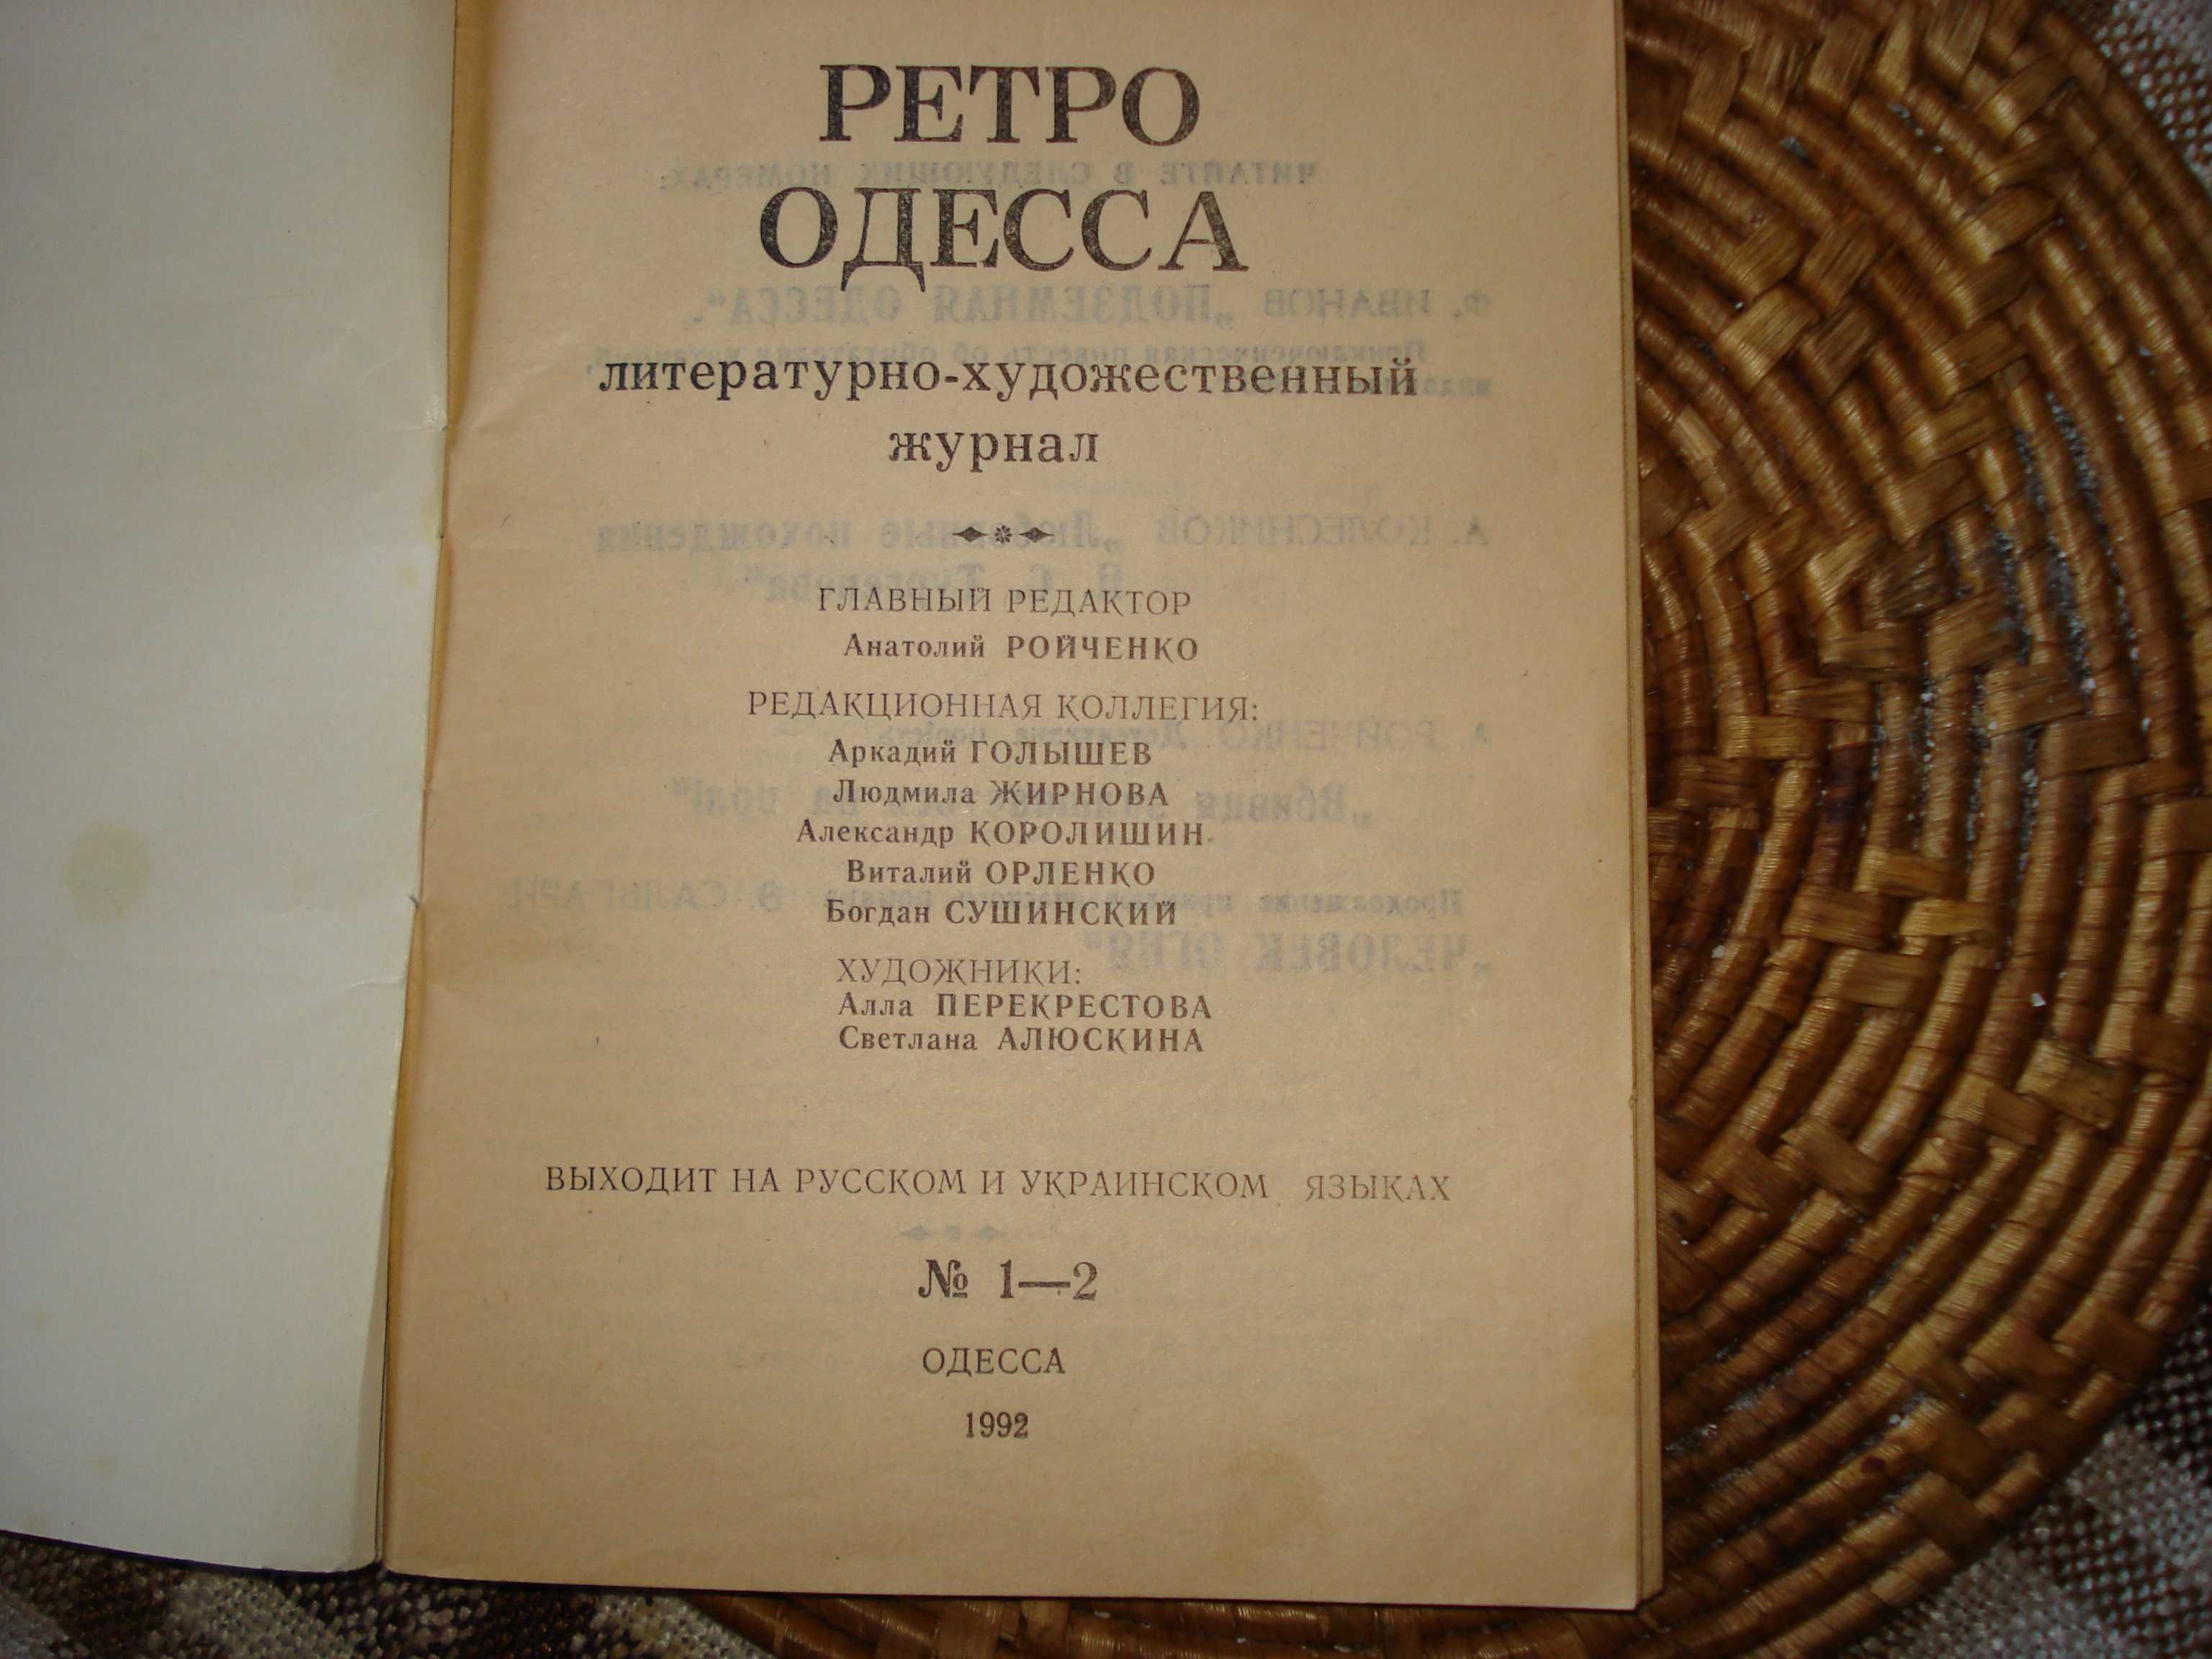 Книга "Ретро Одесса". Экскурсоводам и любознательным гражданам.)